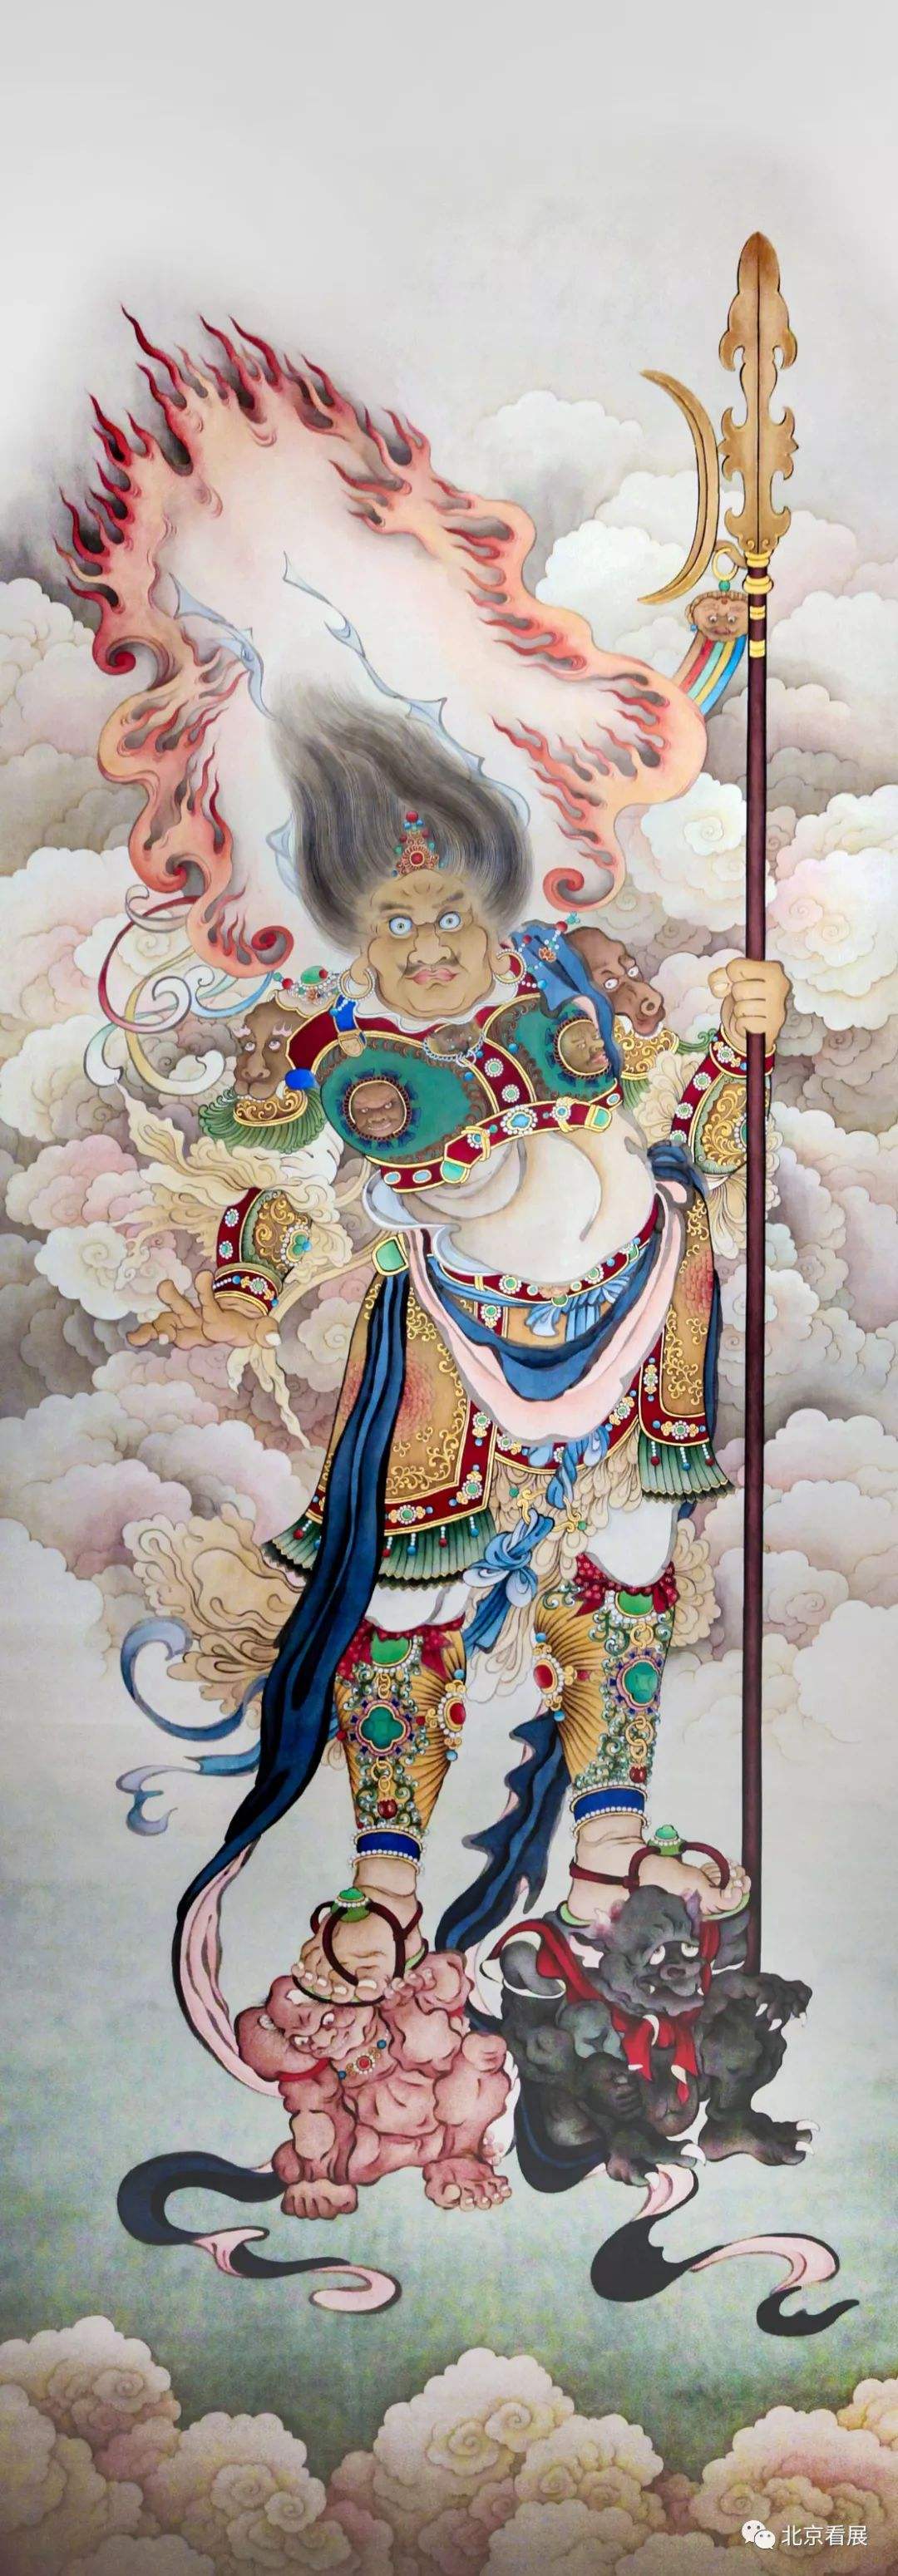 夏荆山老居士佛教绘画作品欣赏